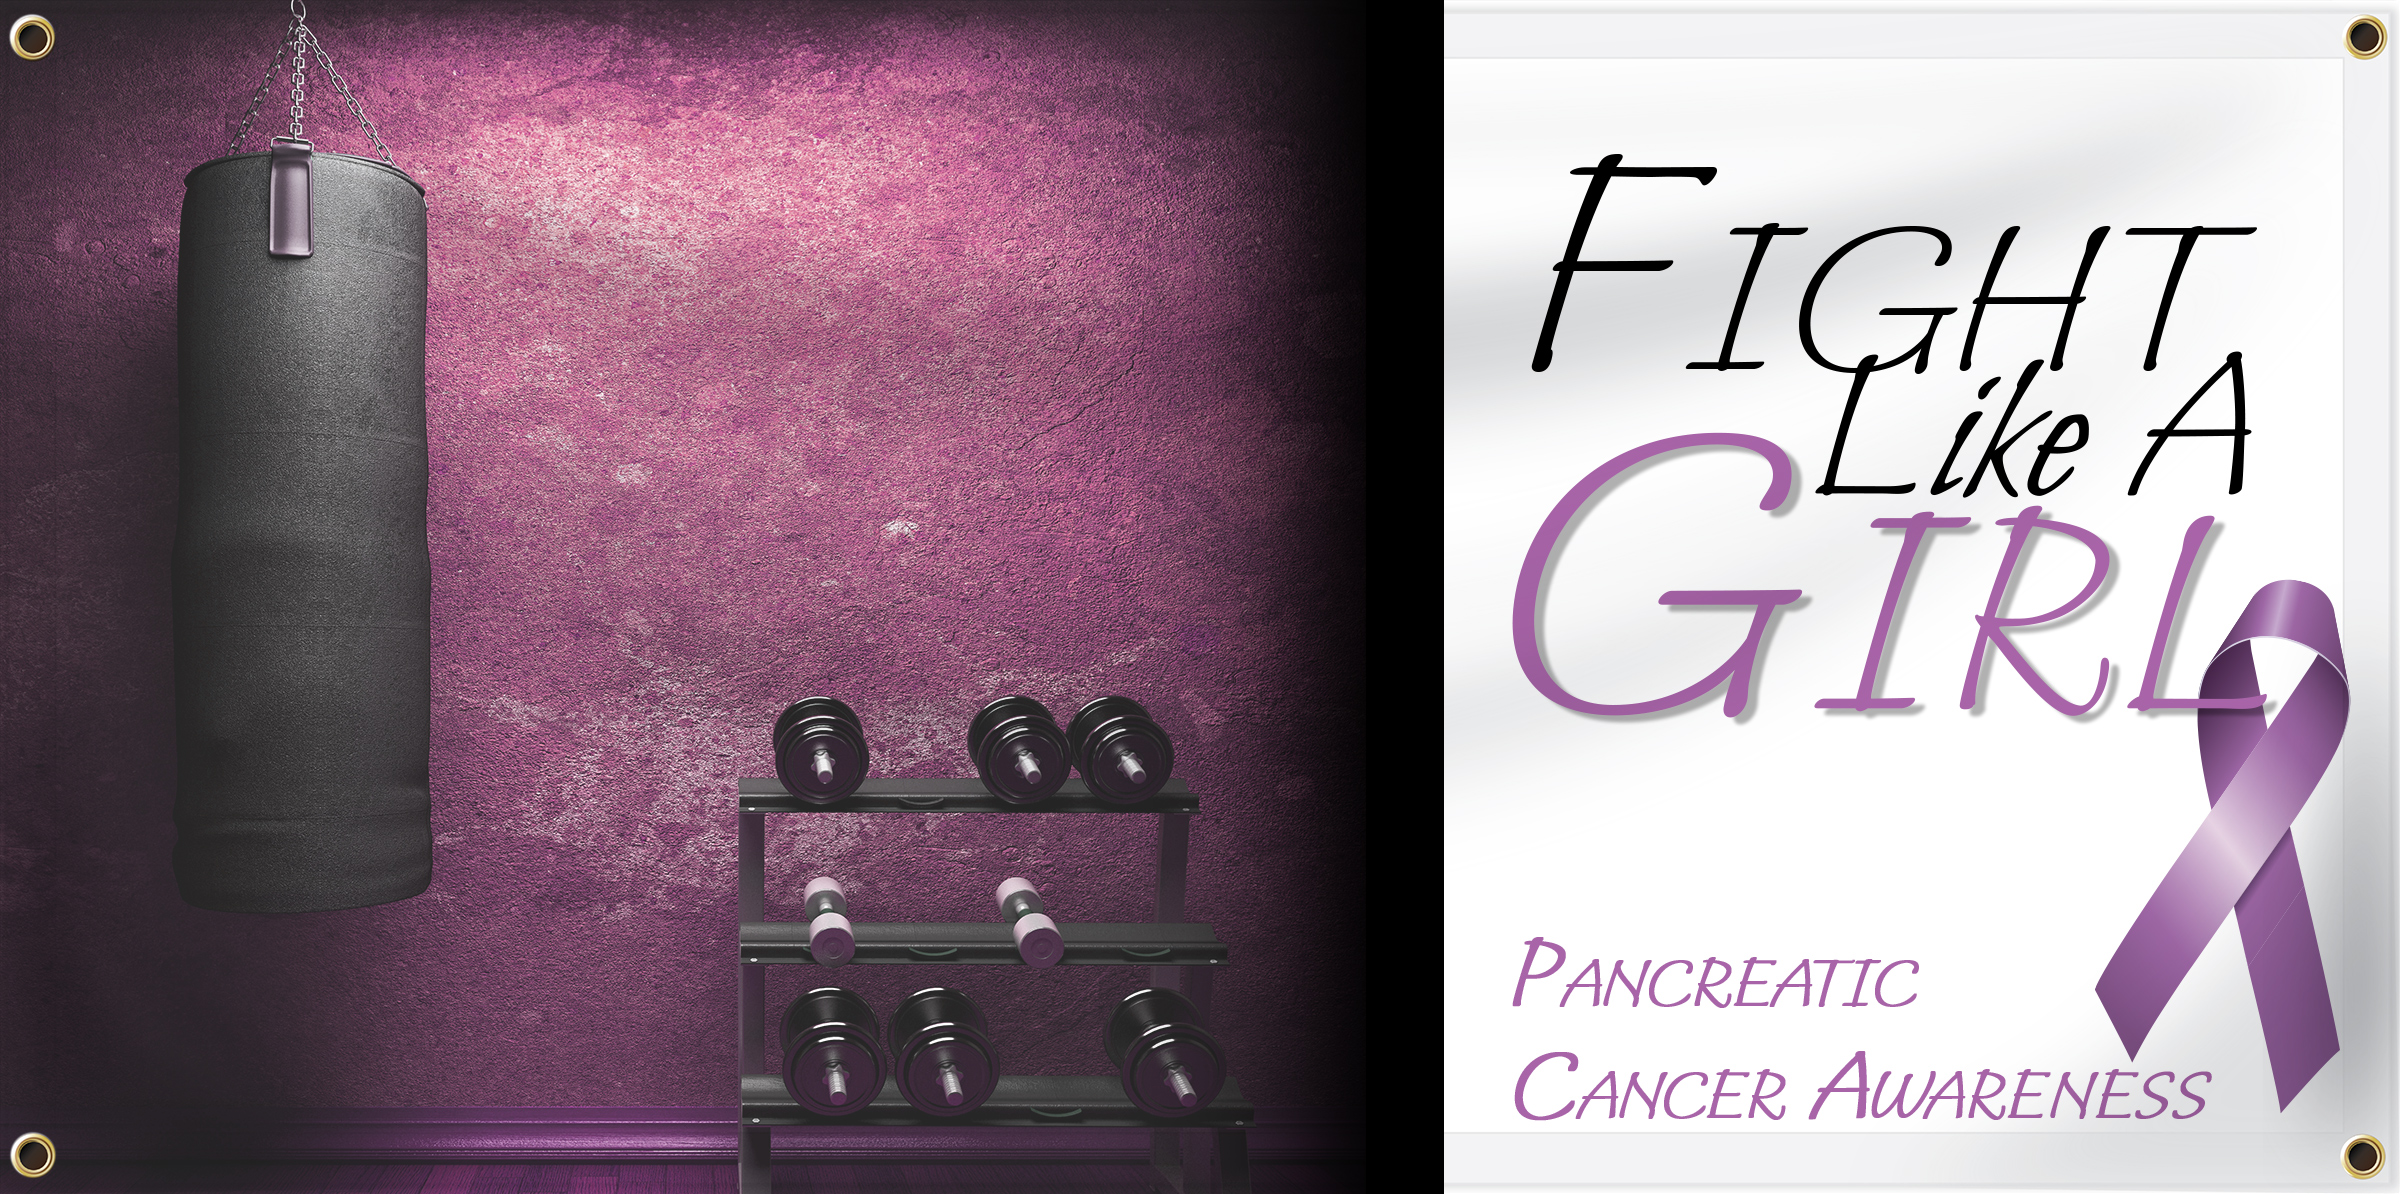 Pancreatic Cancer Awareness | Banners.com